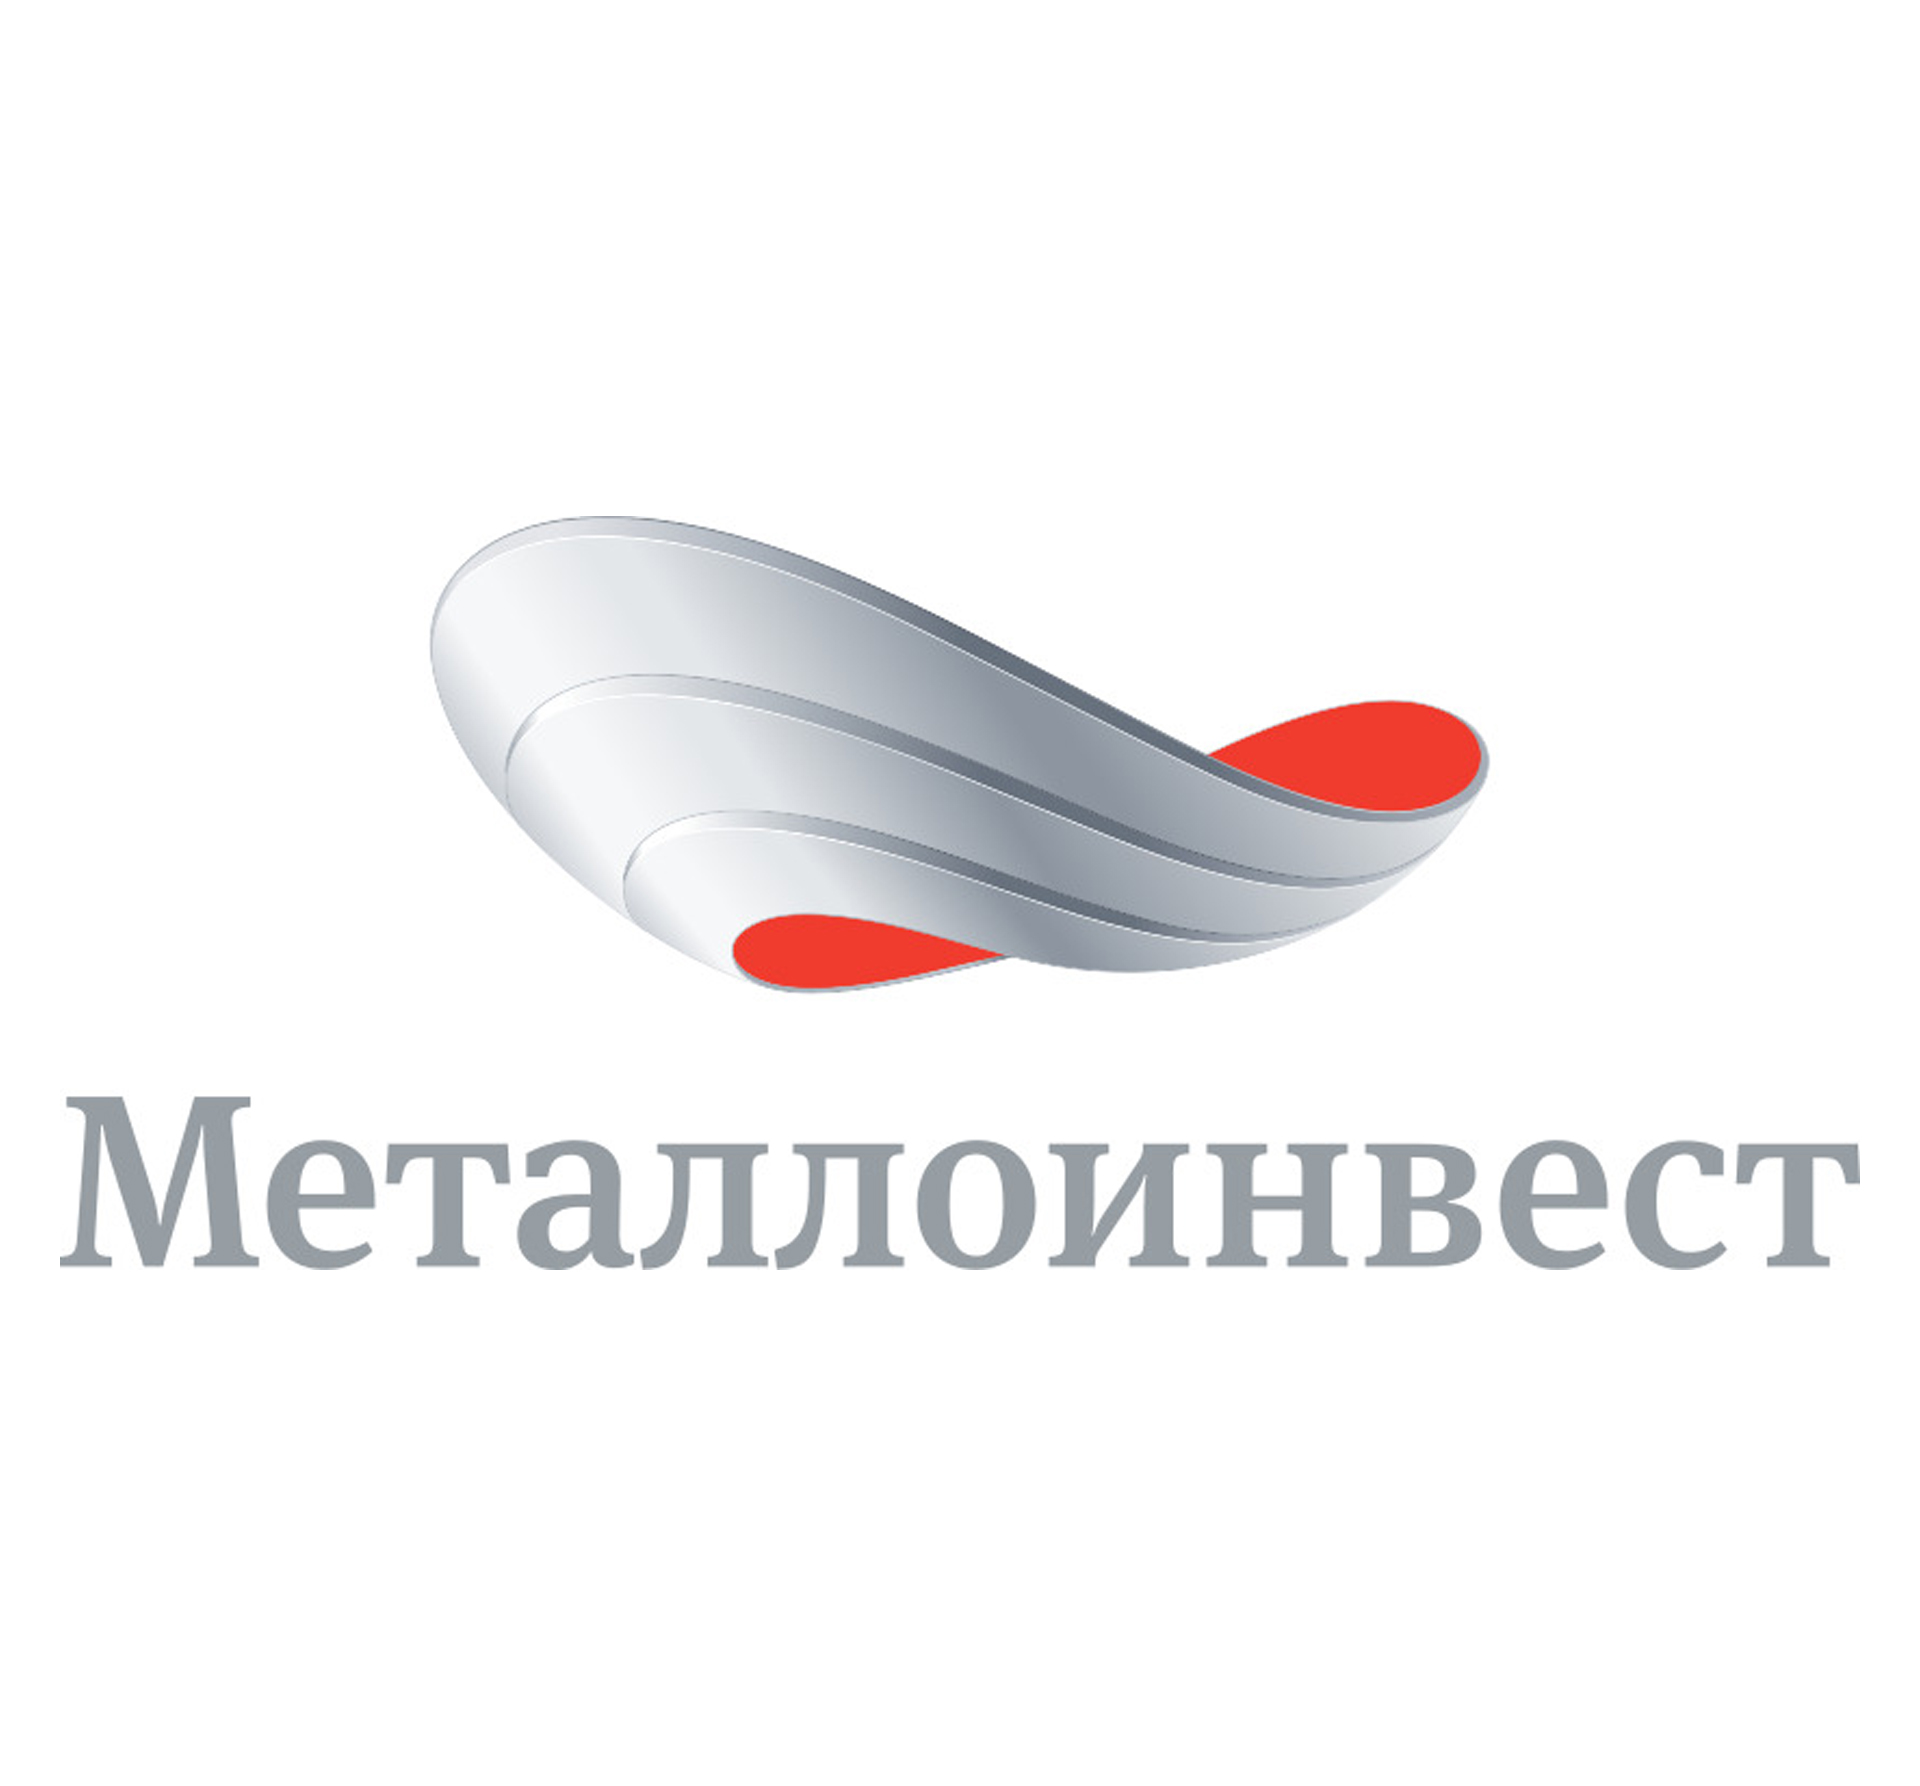 Металлоинвест оказывает Новотроицку помощь в ликвидации аварии